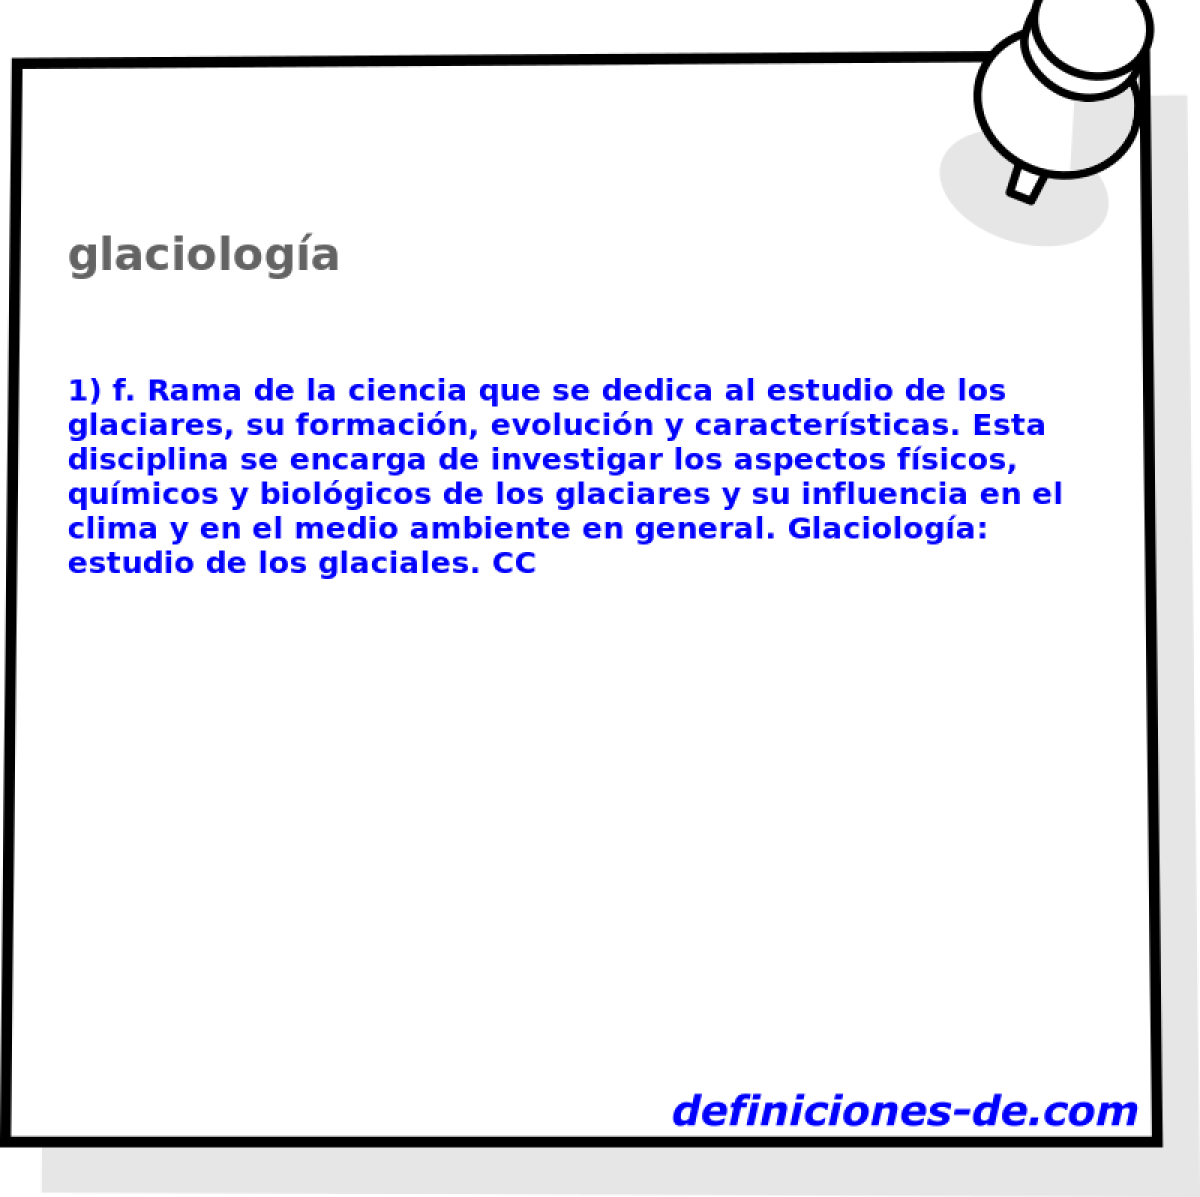 glaciologa 